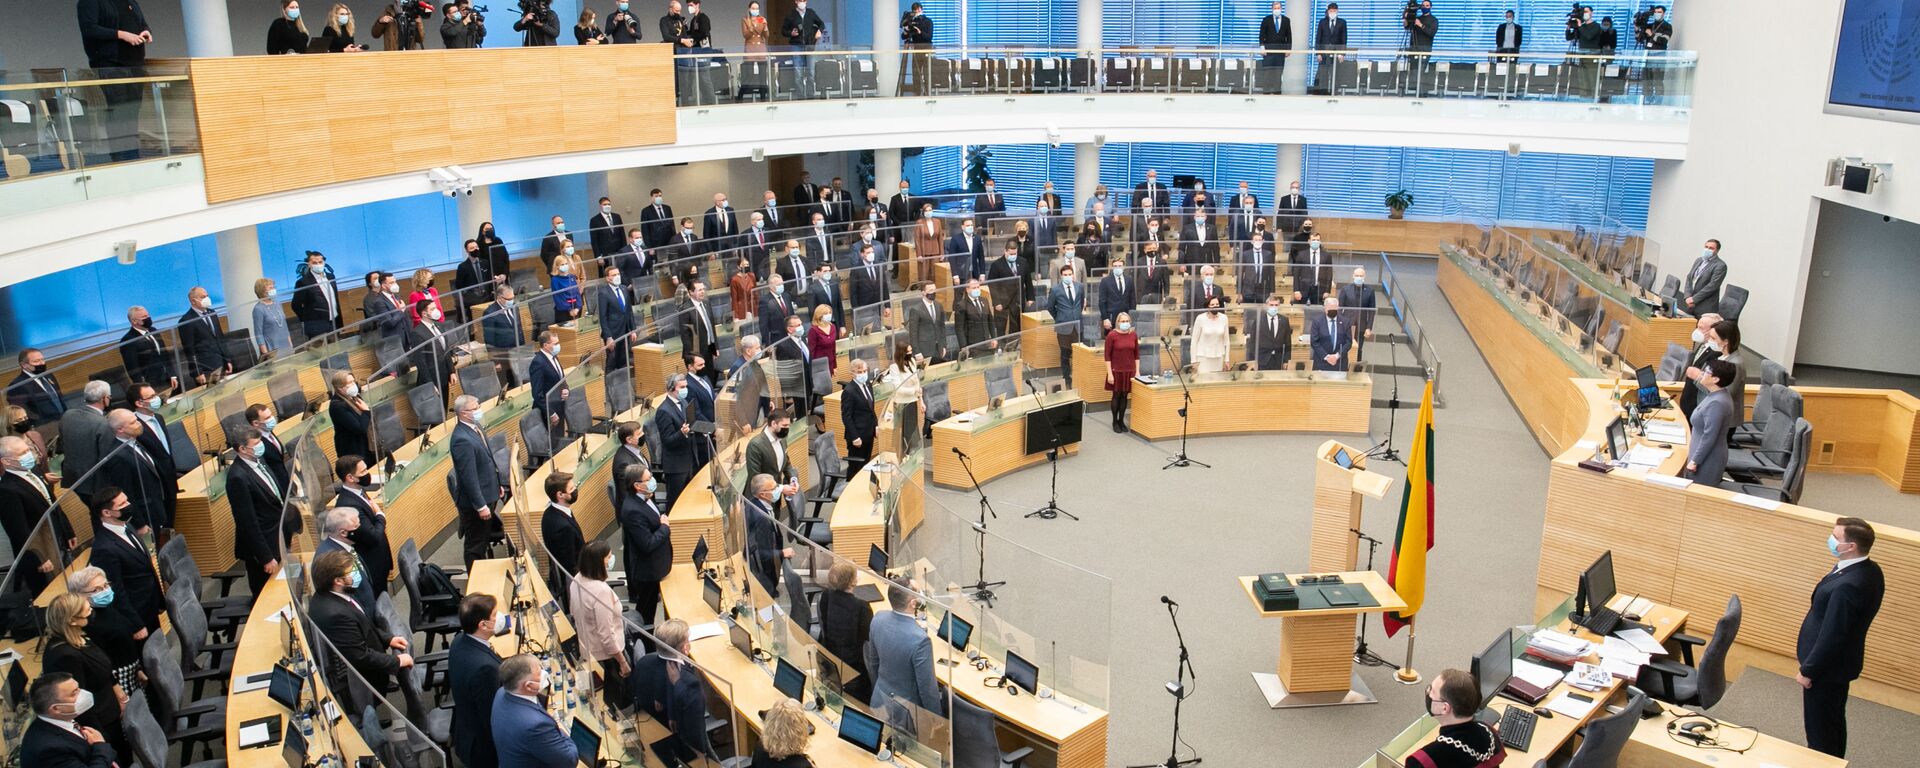 Первое заседание весенней сессии Сейма Литвы, 10 марта 2021 - Sputnik Литва, 1920, 18.03.2021